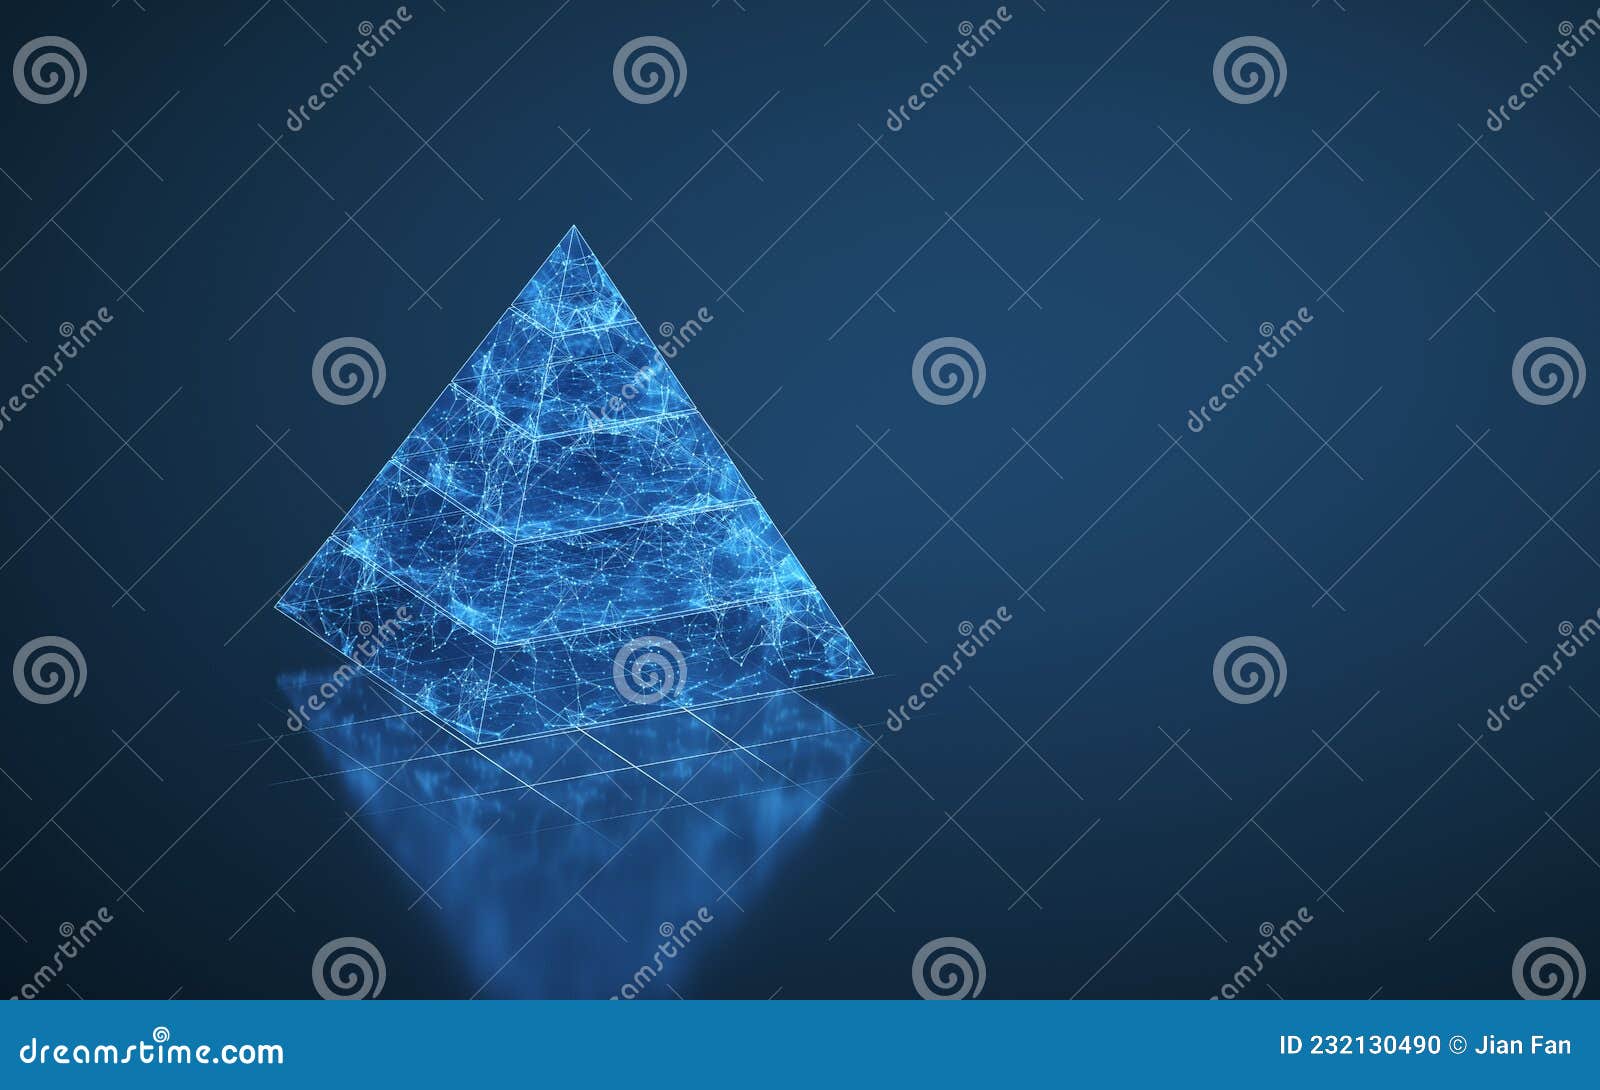 Piramidebeelden En Gegevensanalyse 3d Rendering Stock Illustratie ...